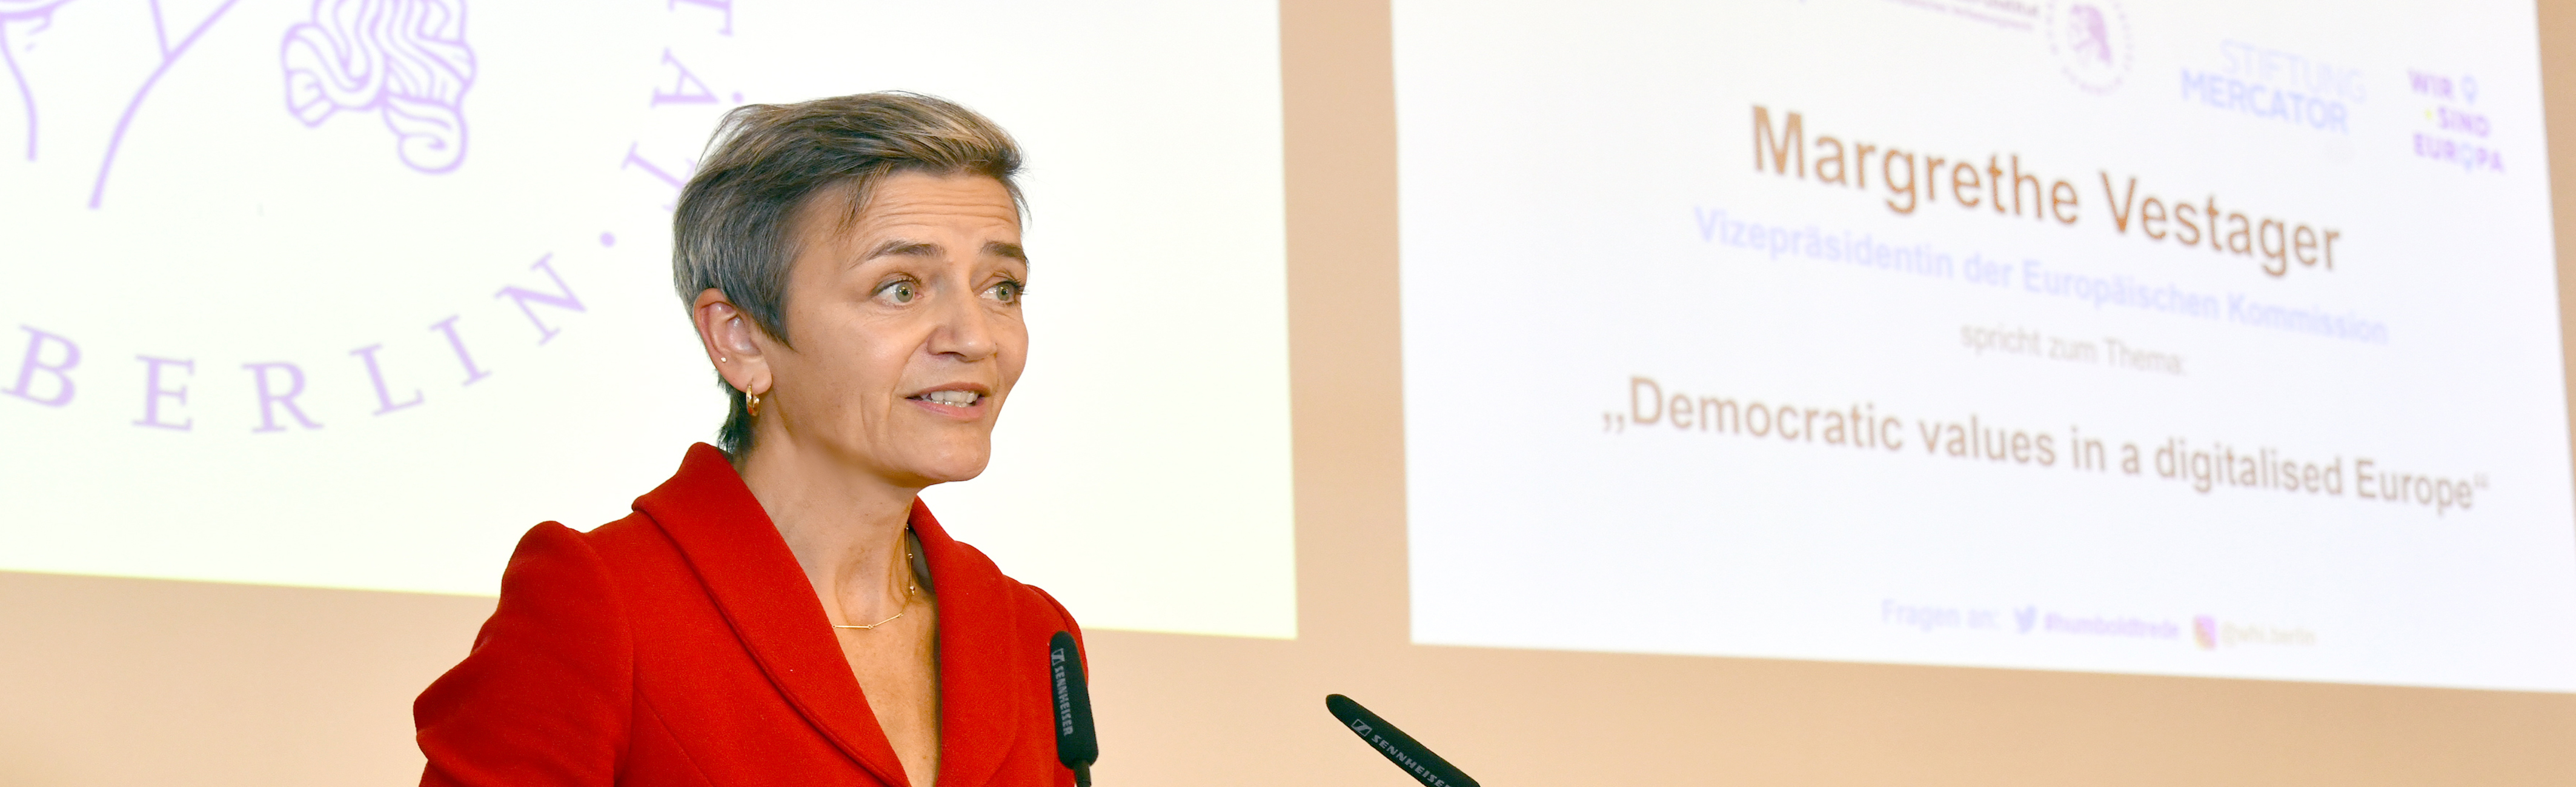 Margrethe Vestager, Vizepräsidentin der Europäischen Kommission.JPG